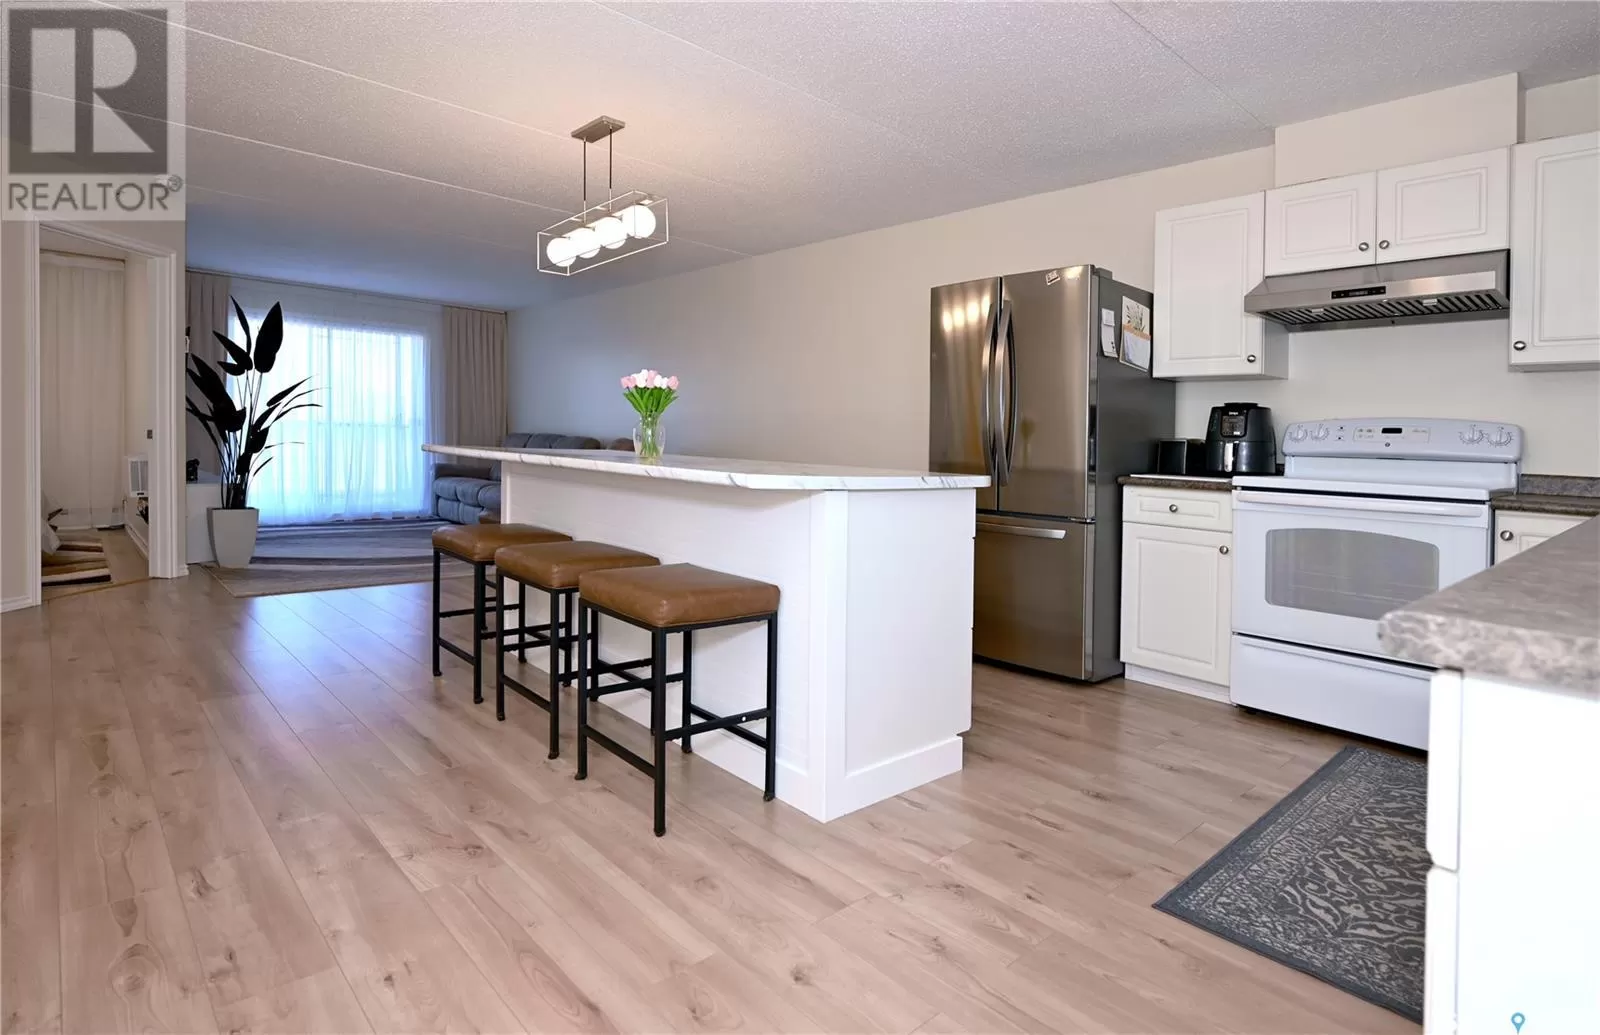 Apartment for rent: 206 701 Henry Street, Estevan, Saskatchewan S4A 2B7